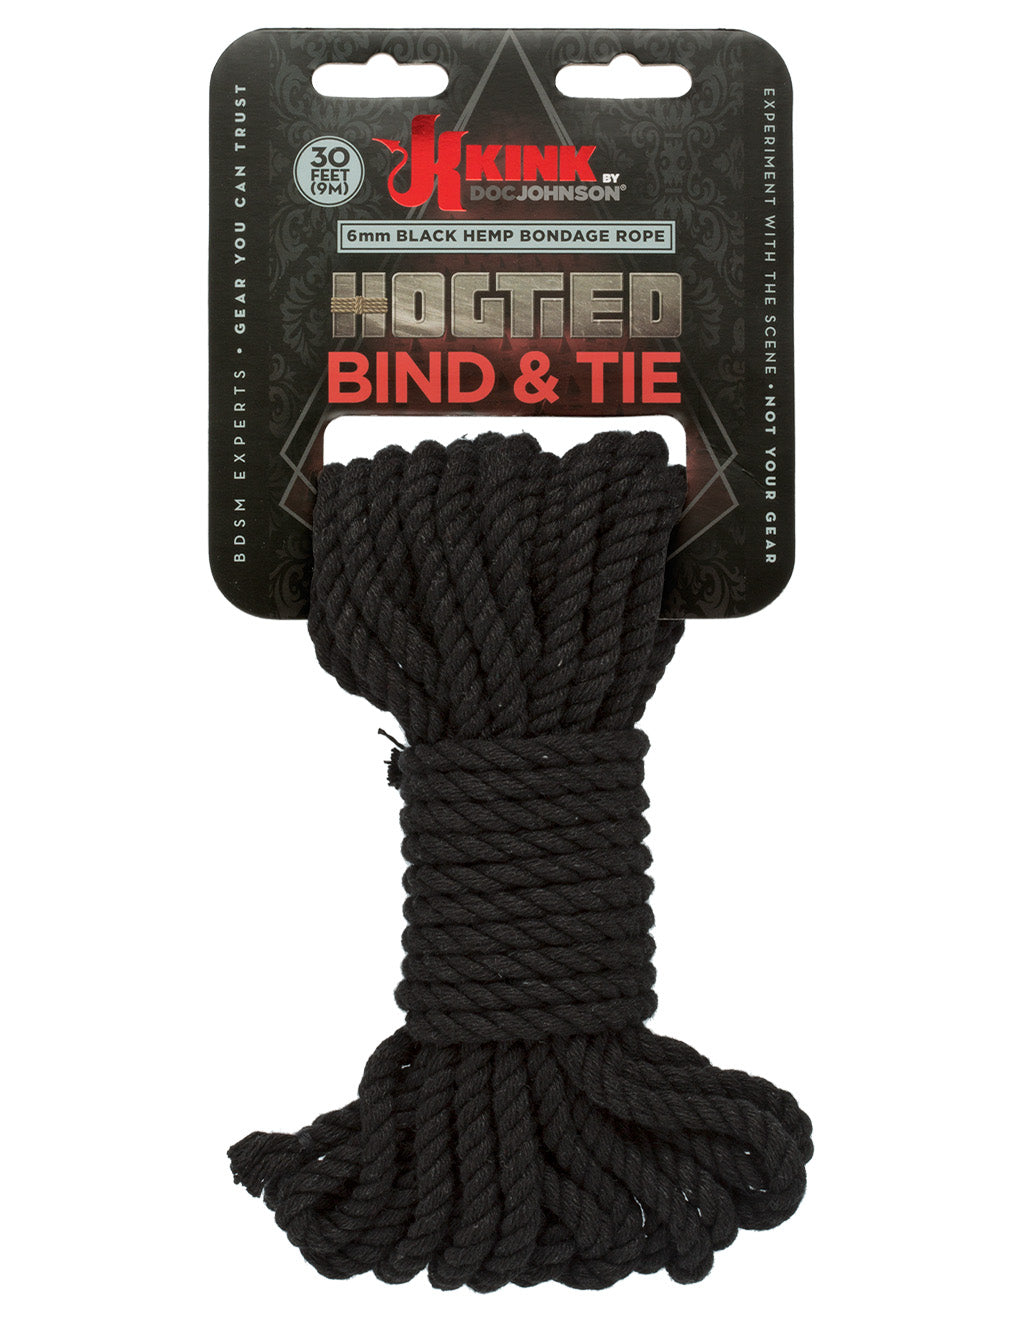 Kink Bind & Tie Hemp Rope 30 Feet- Black- Front